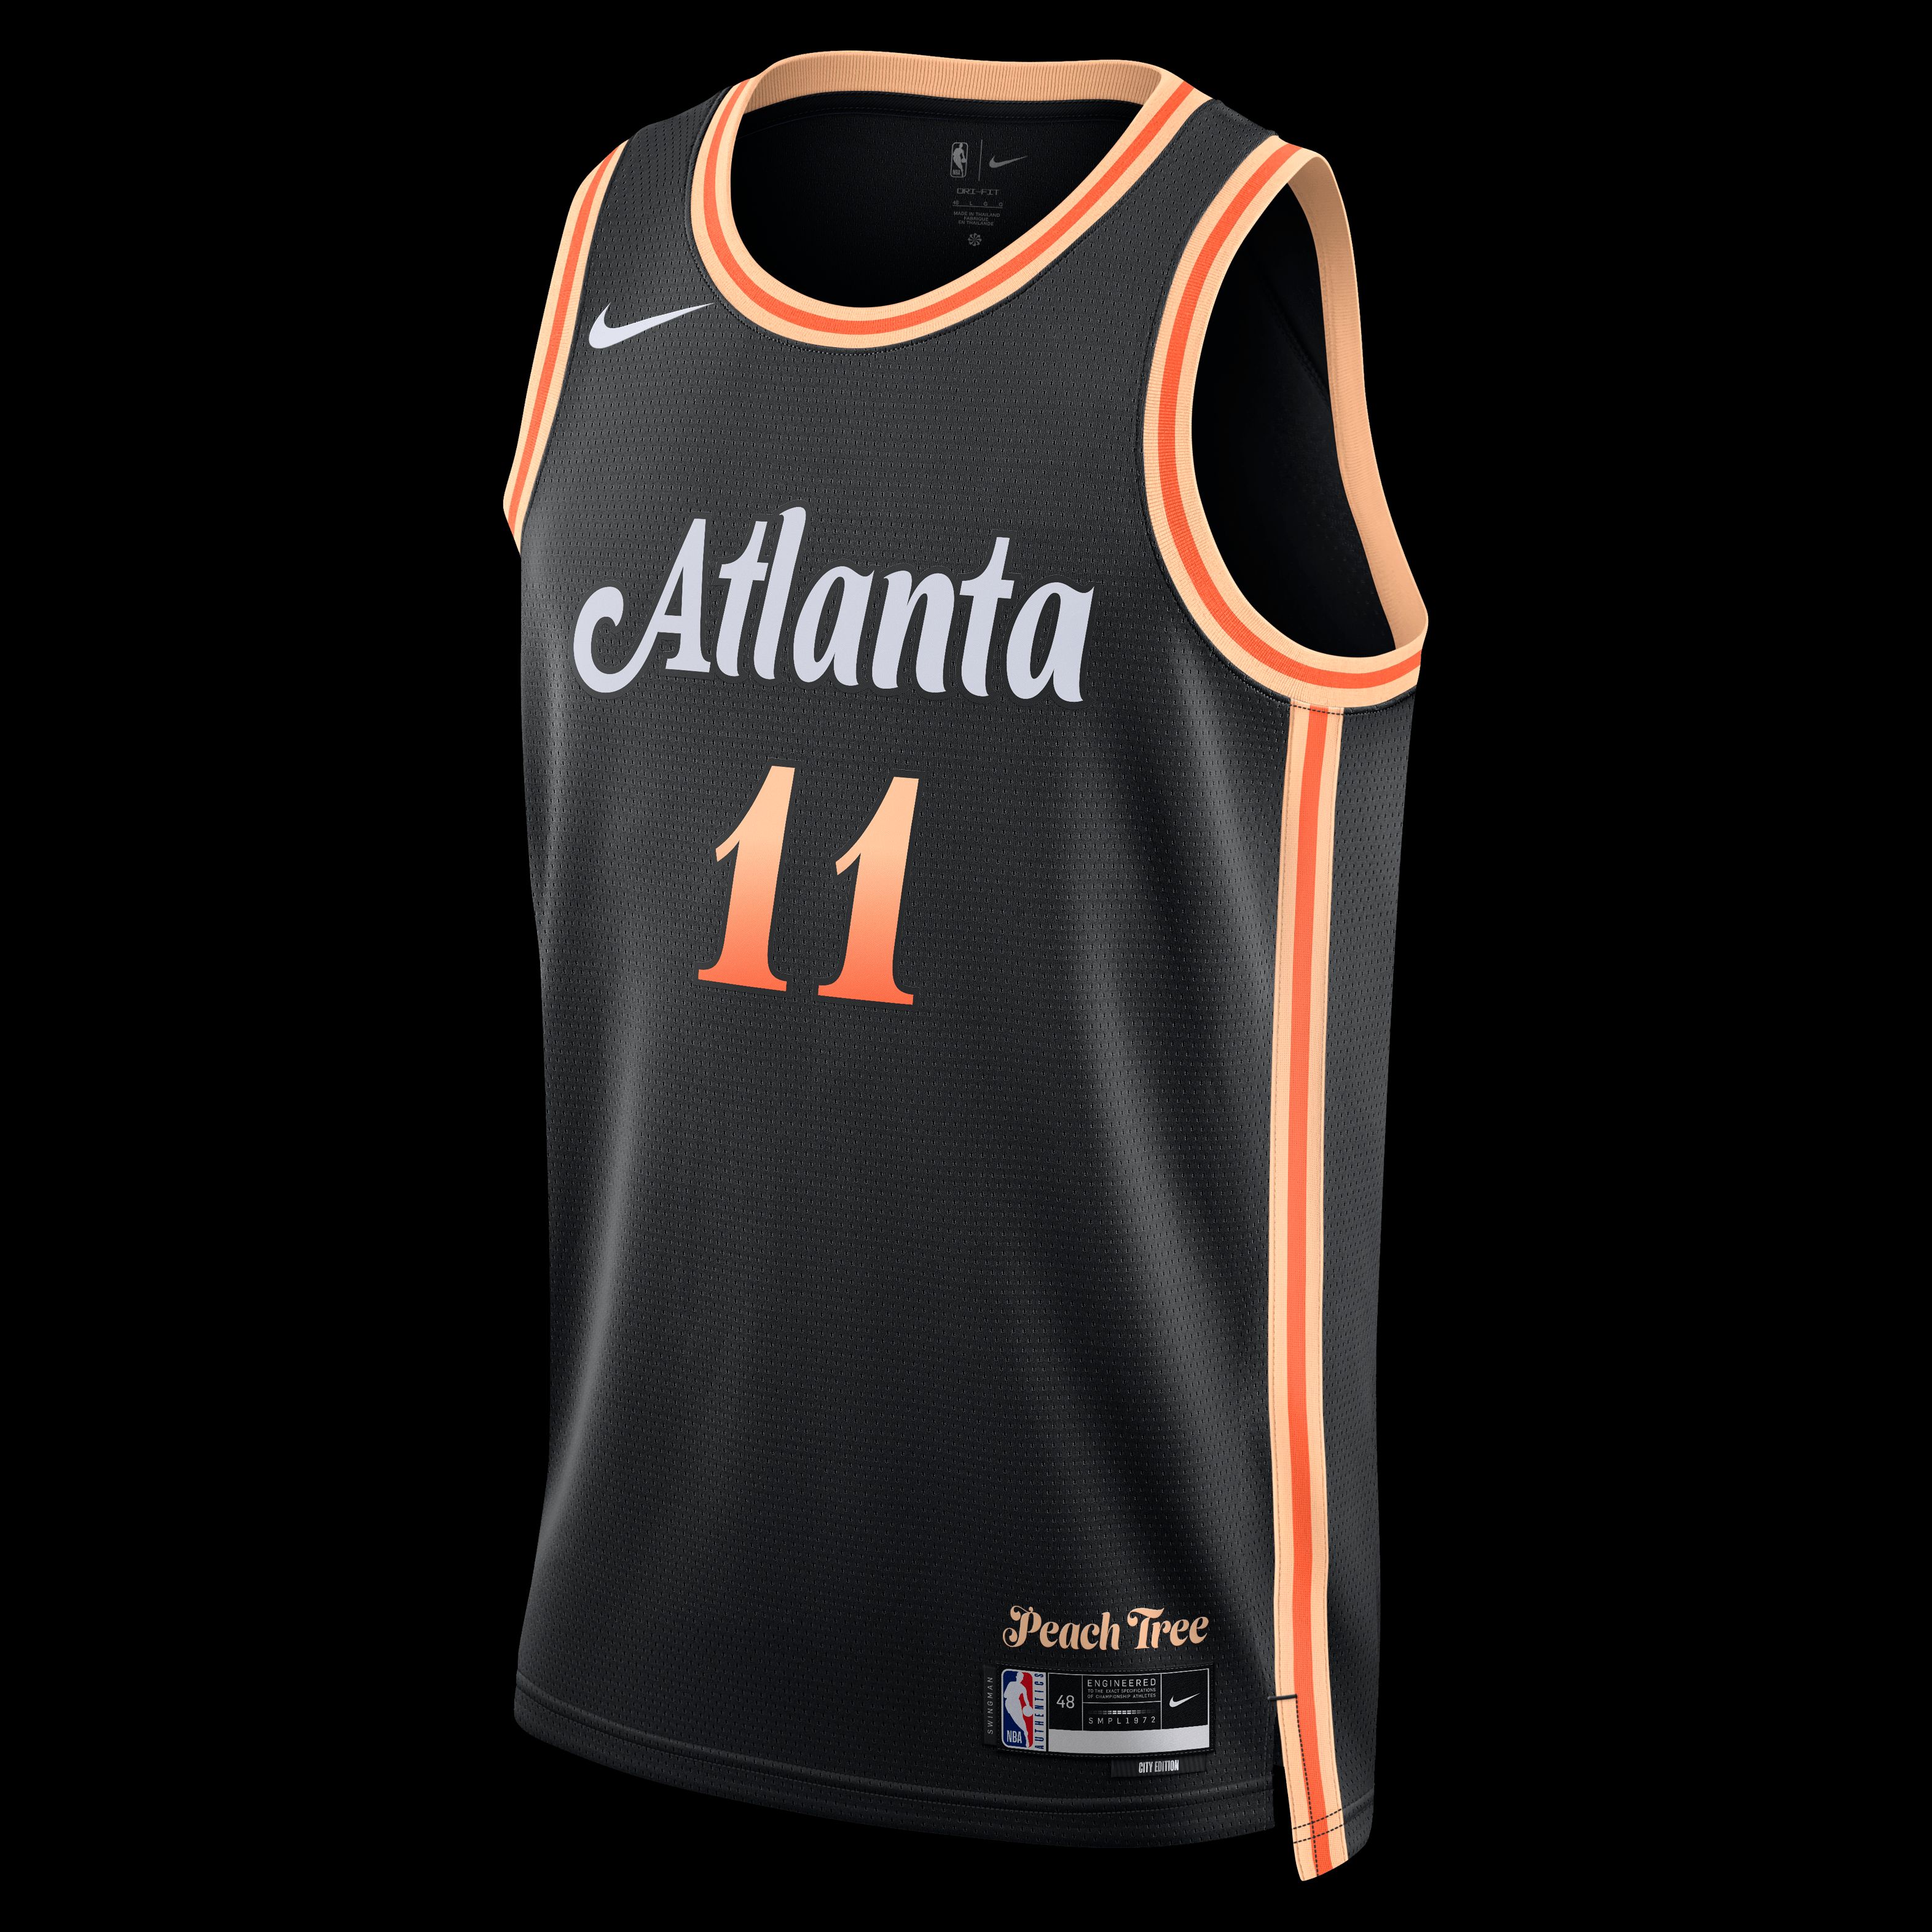 Atlanta Hawks New Nike City Edition Jerseys Appear Online - Sports